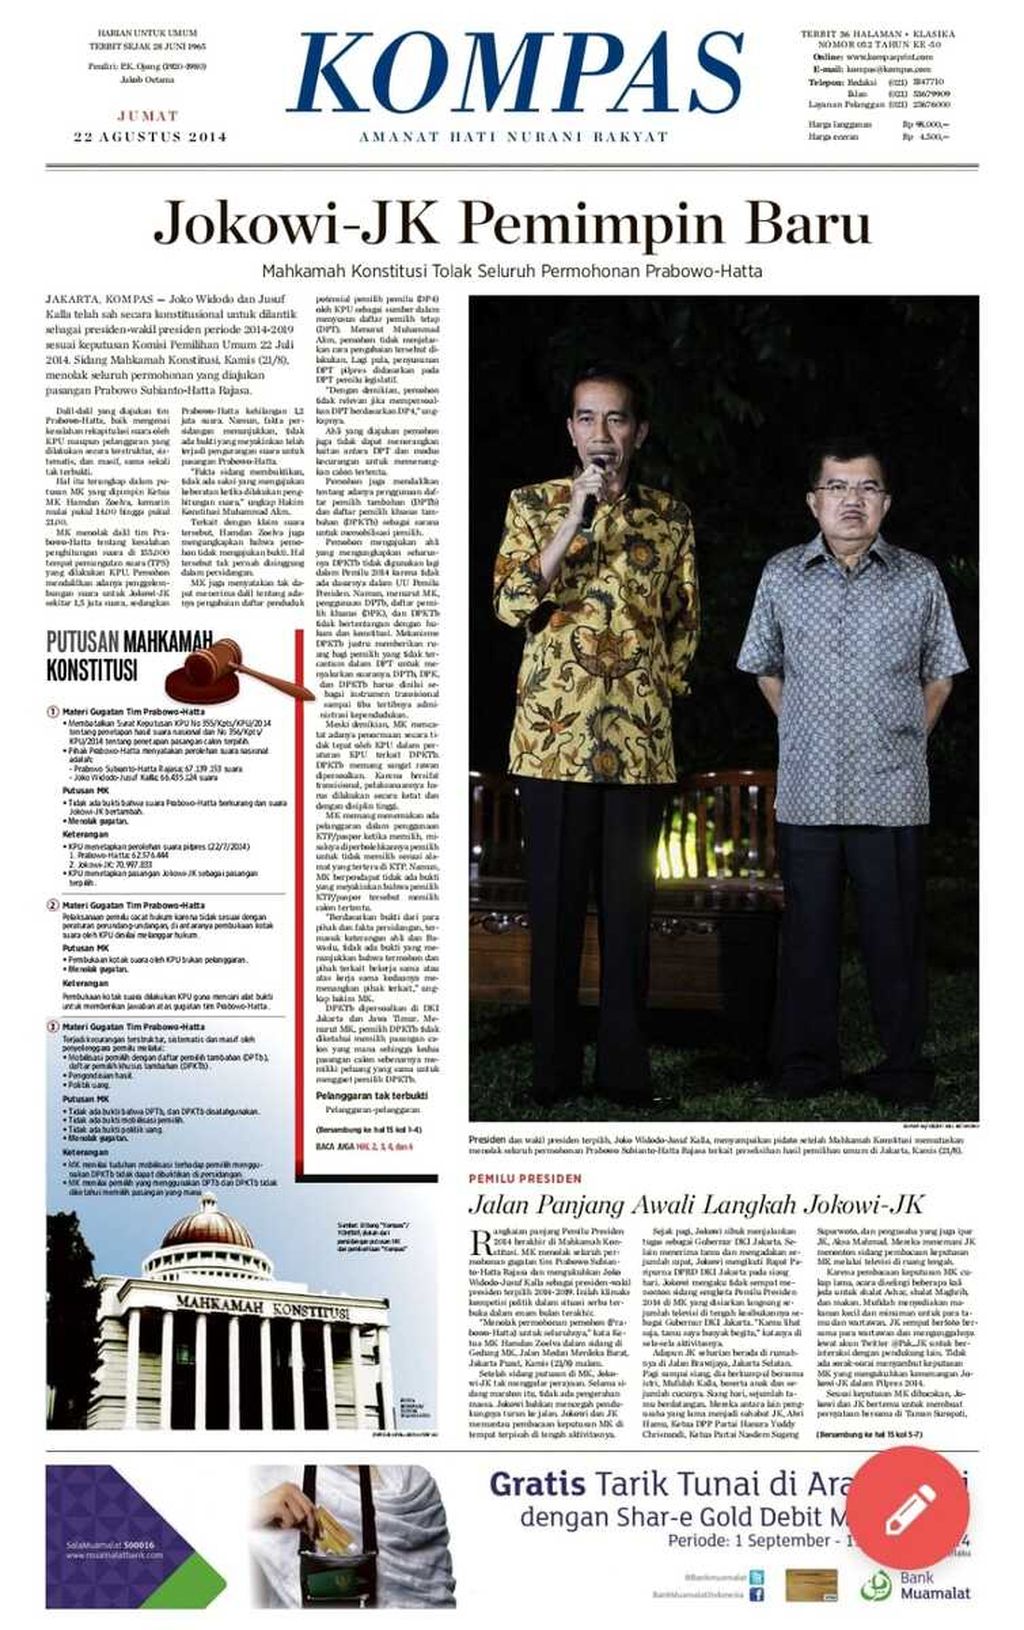 Terbitan koran <i>Kompas</i> sehari setelah sidang putusan MK tentang sengketa Pemilu 2014.